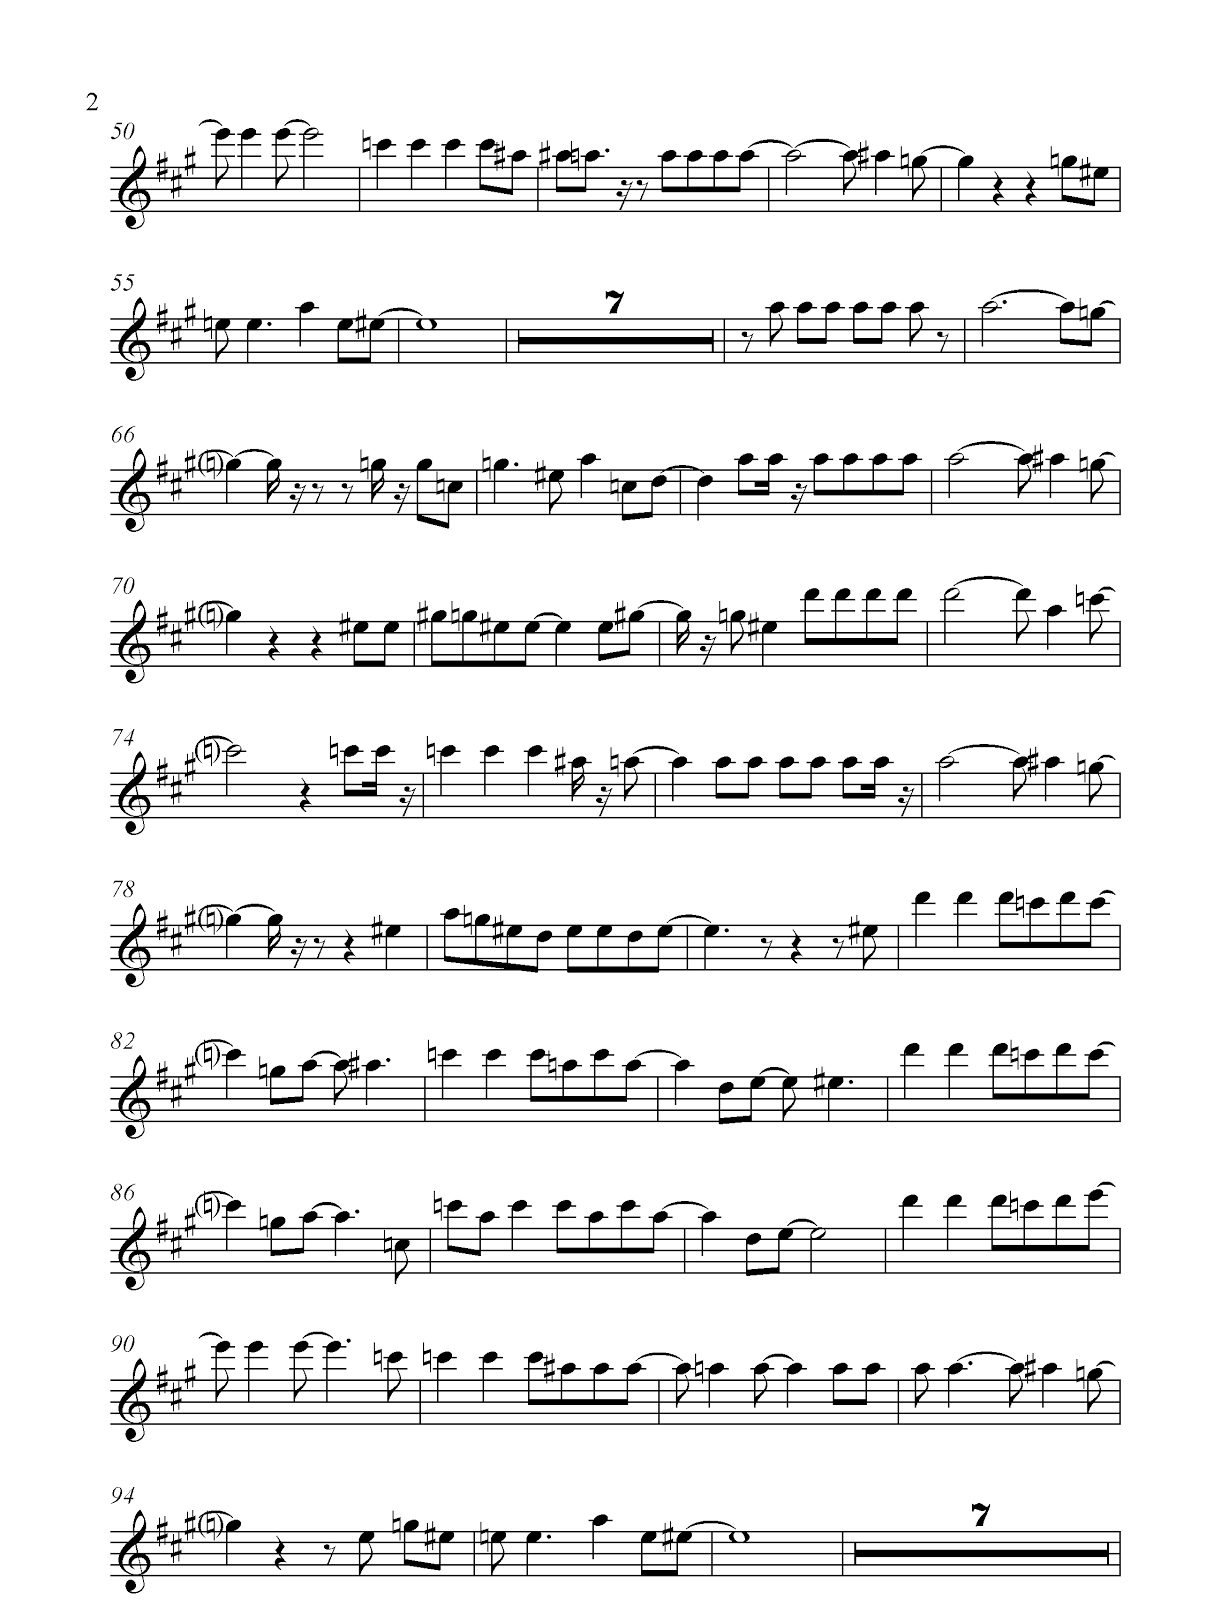 Viva la vida" Coldplay (Sheet music free) - Free sheet music sax